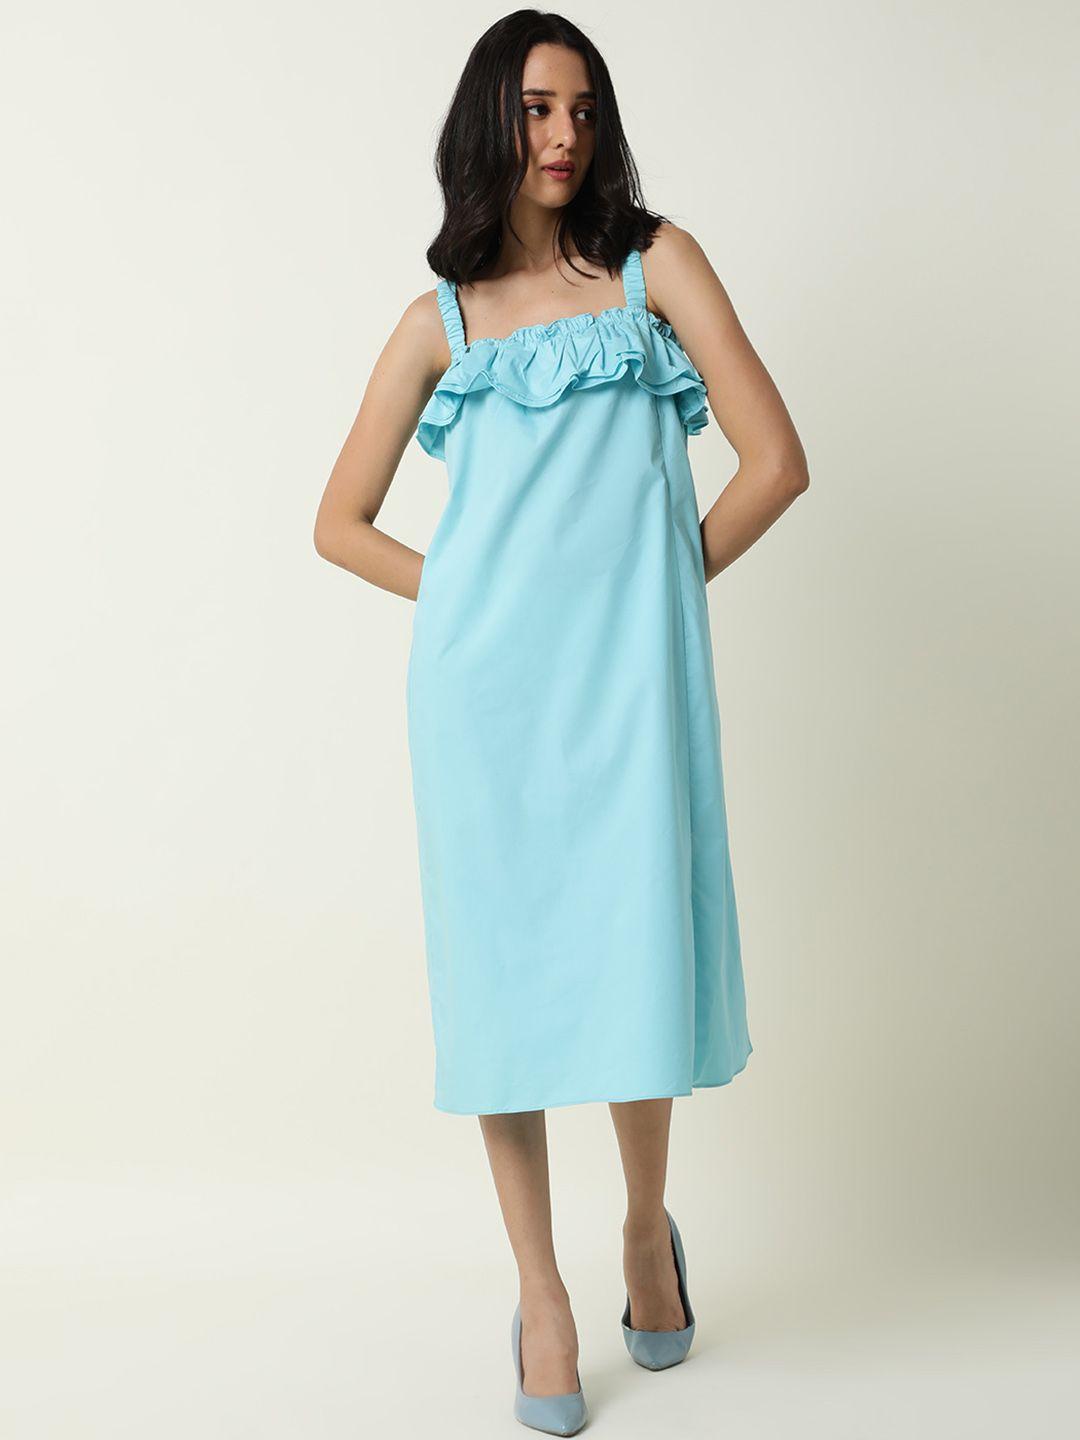 rareism-blue-a-line-midi-dress